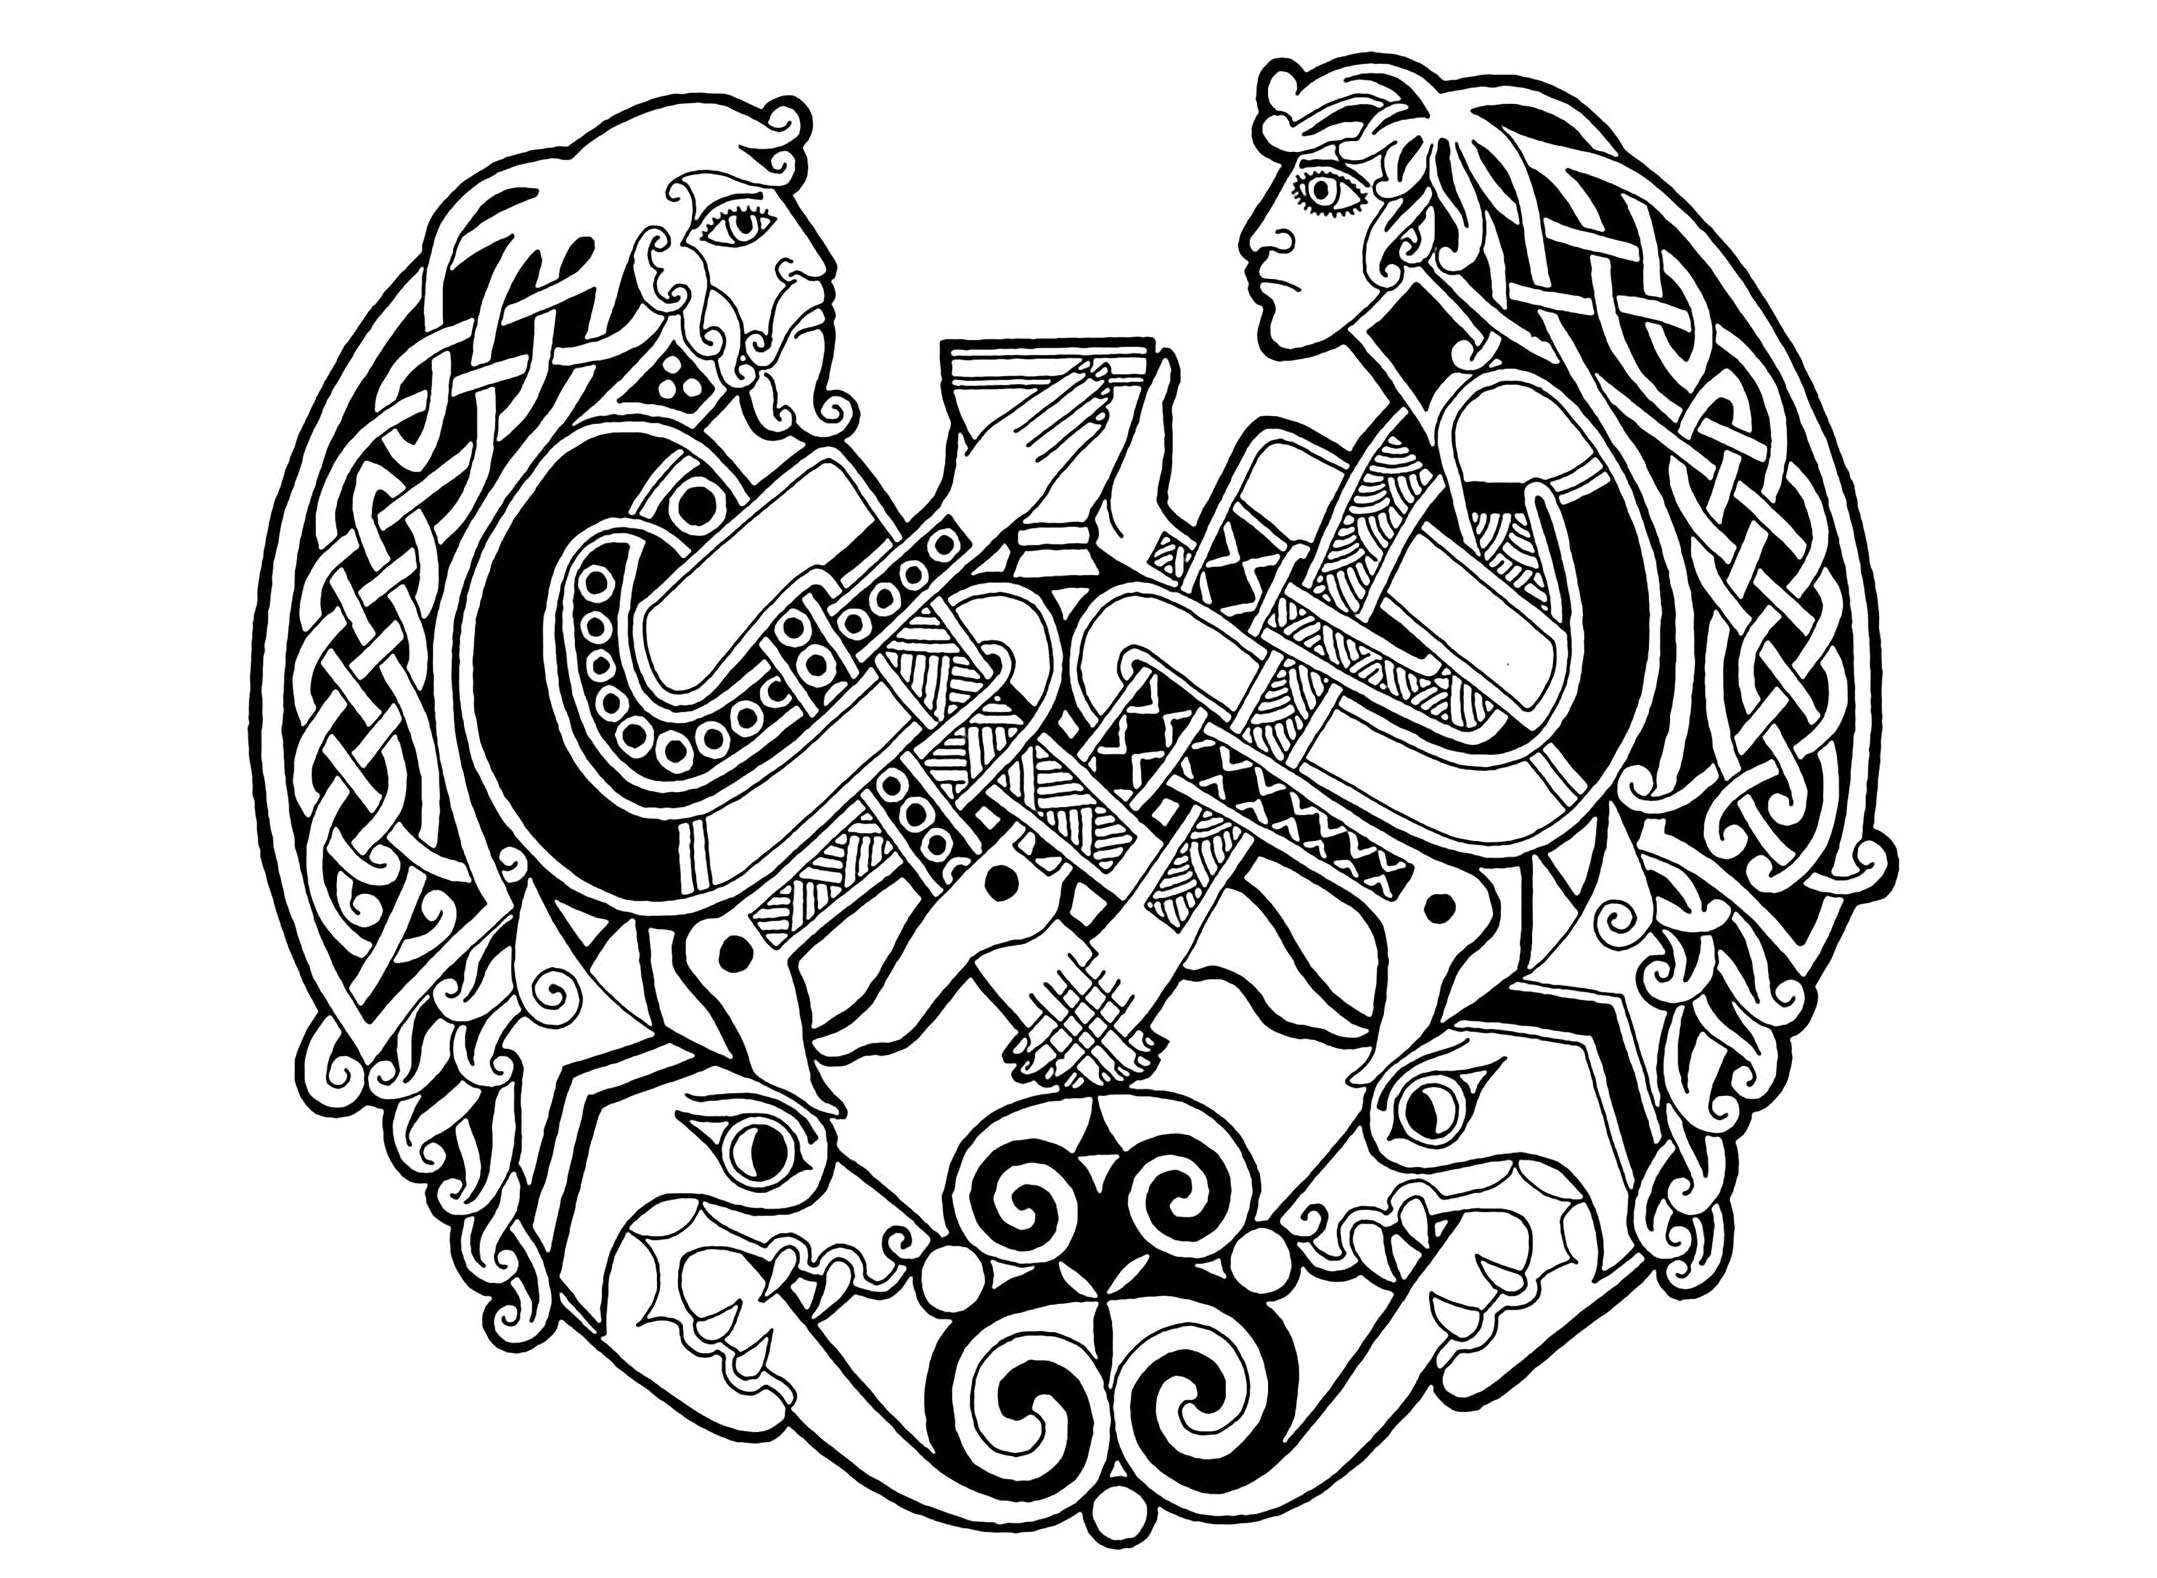 Кельтский орнамент кельтов